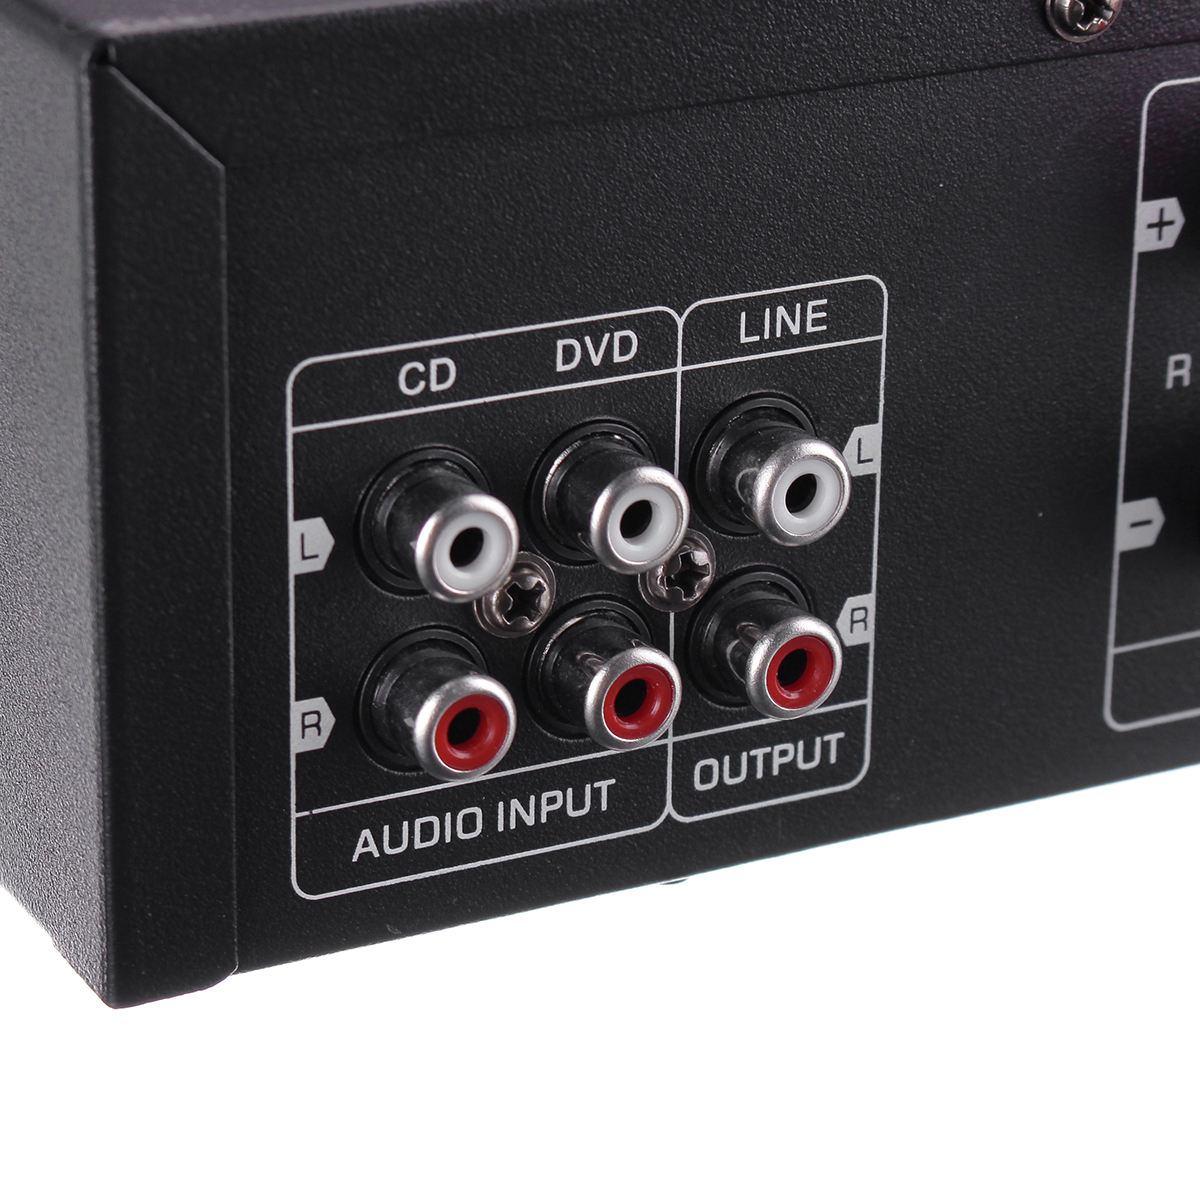 Sunbuck TAV-6188E 200W Bluetooth 5.0 Amplificatore Audio Stereo Home Theater AMP 2CH AUX USB FM SD 7